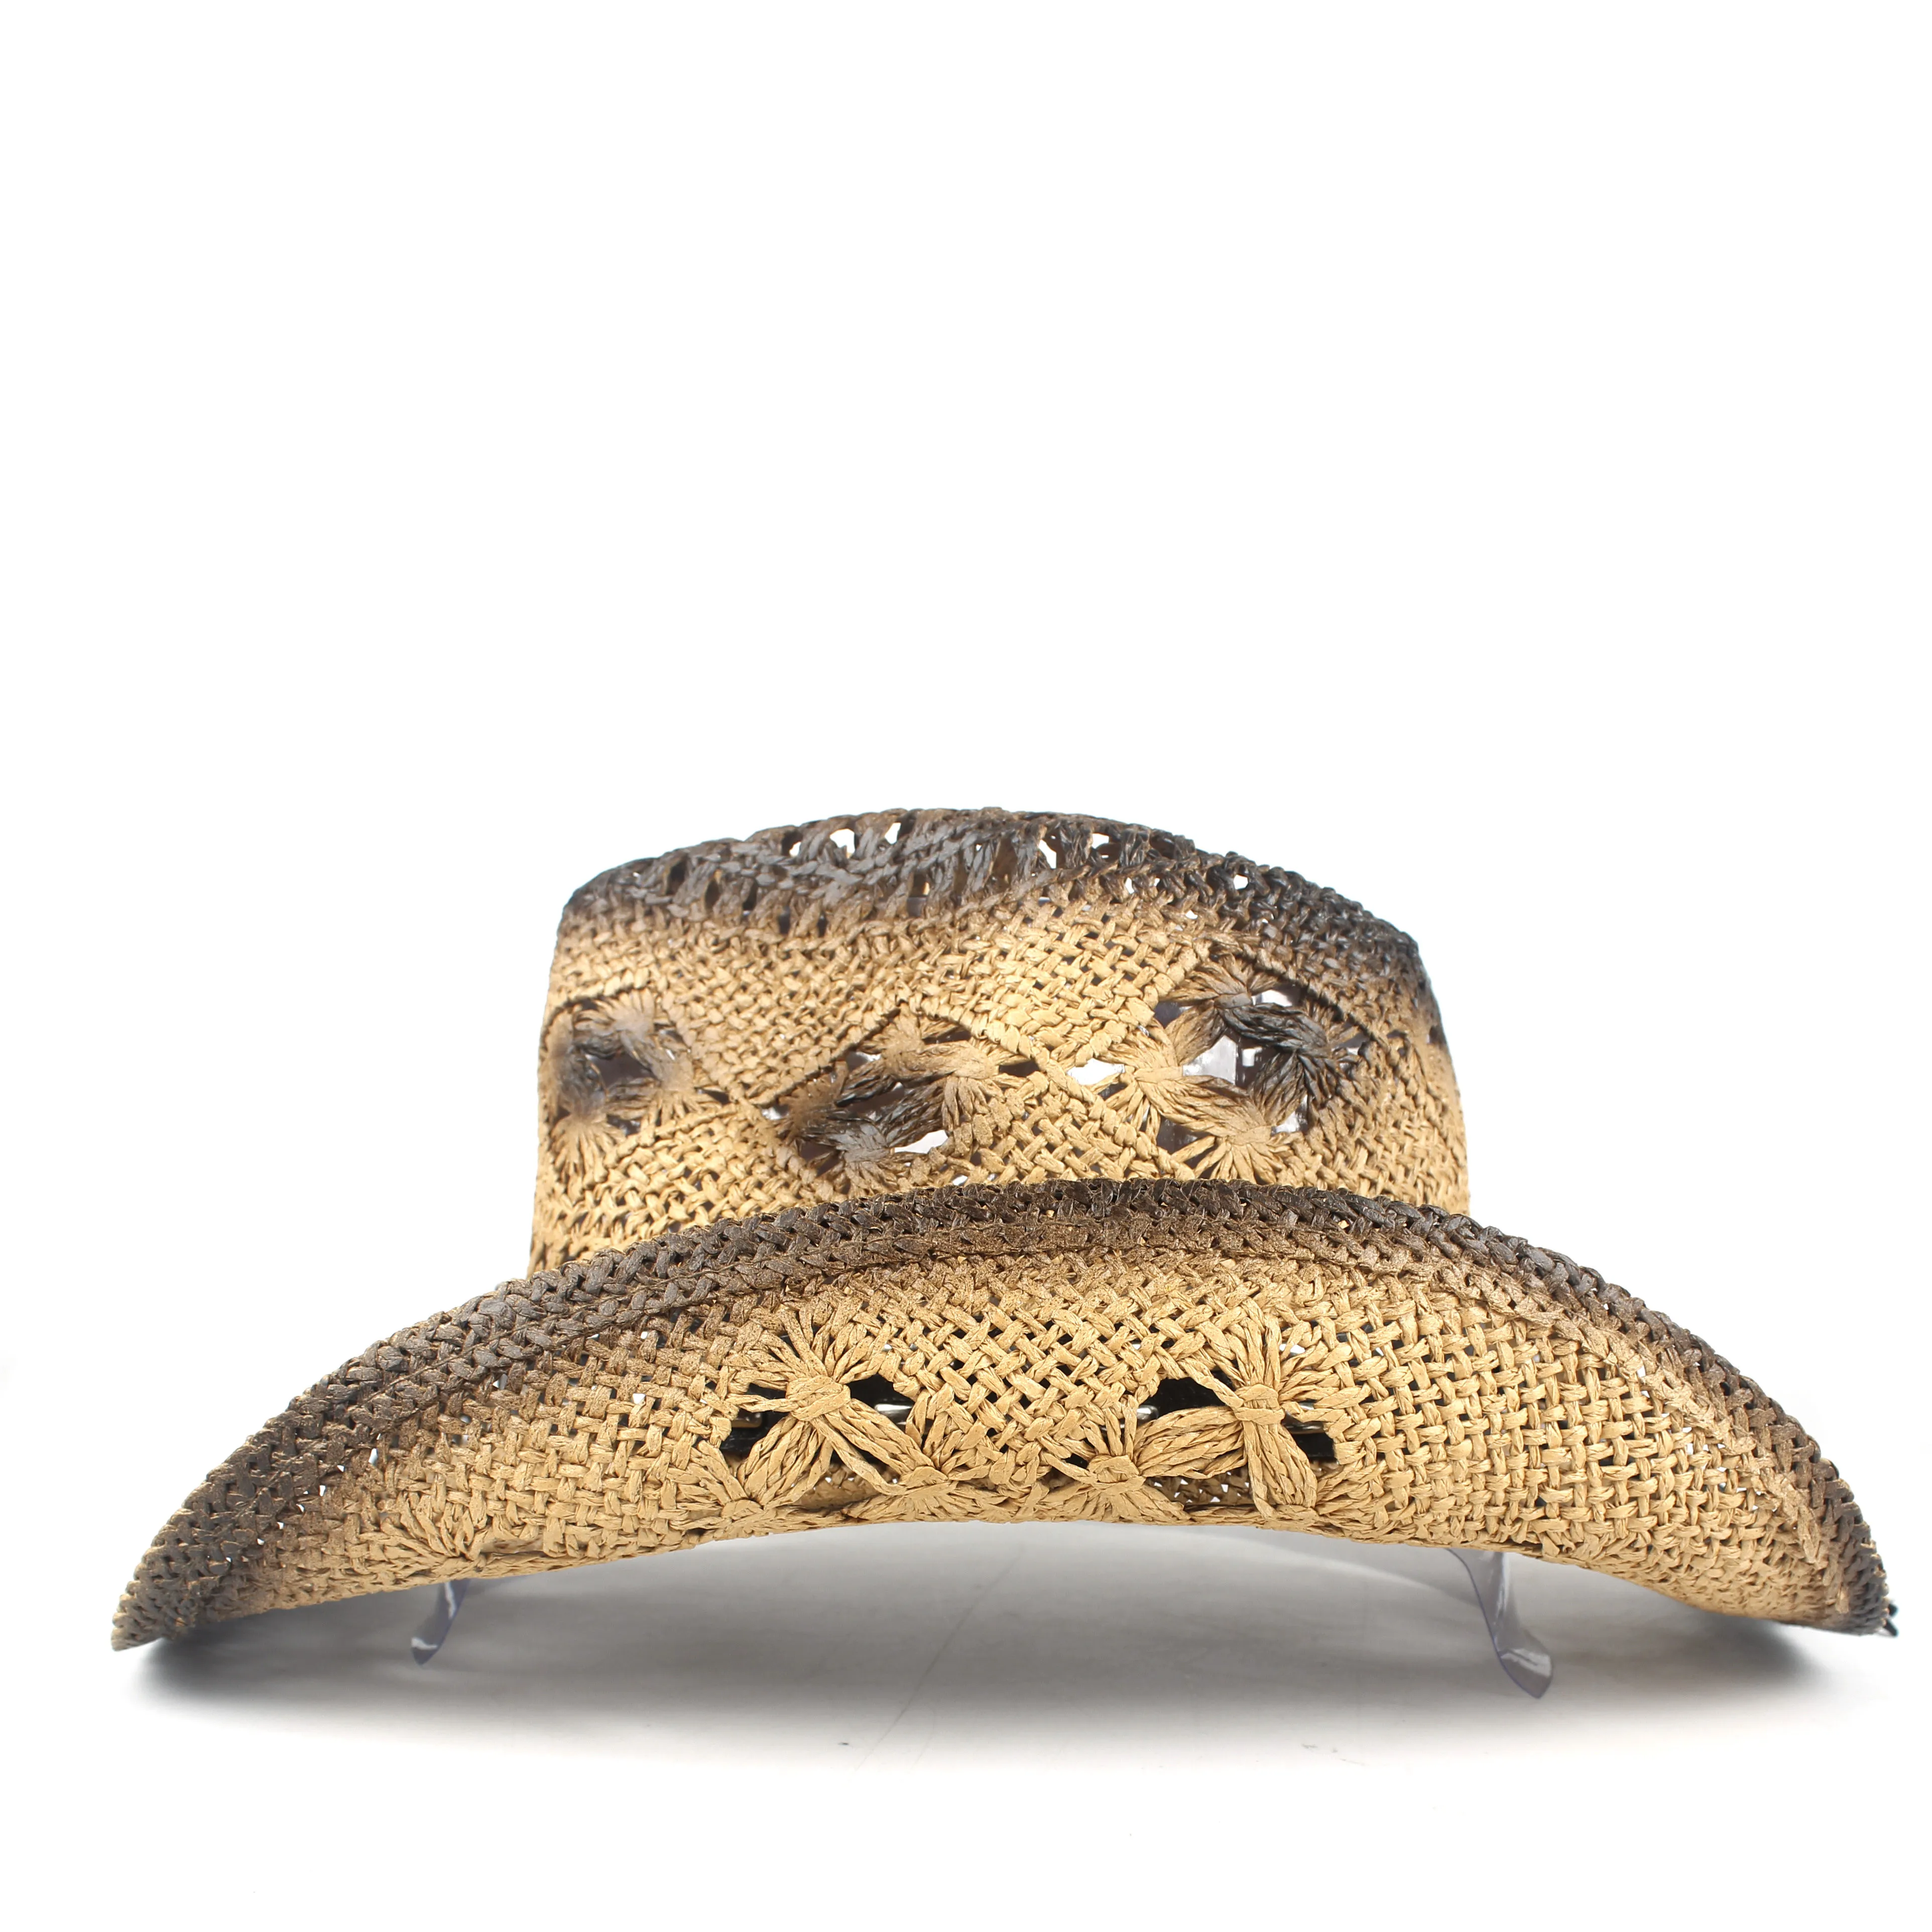 Новая соломенная открытая западная ковбойская шляпа для женщин и мужчин HandmadePunk Sombrero Hombre пляжная ковбойская джаз шляпа от солнца размер 56-58 см